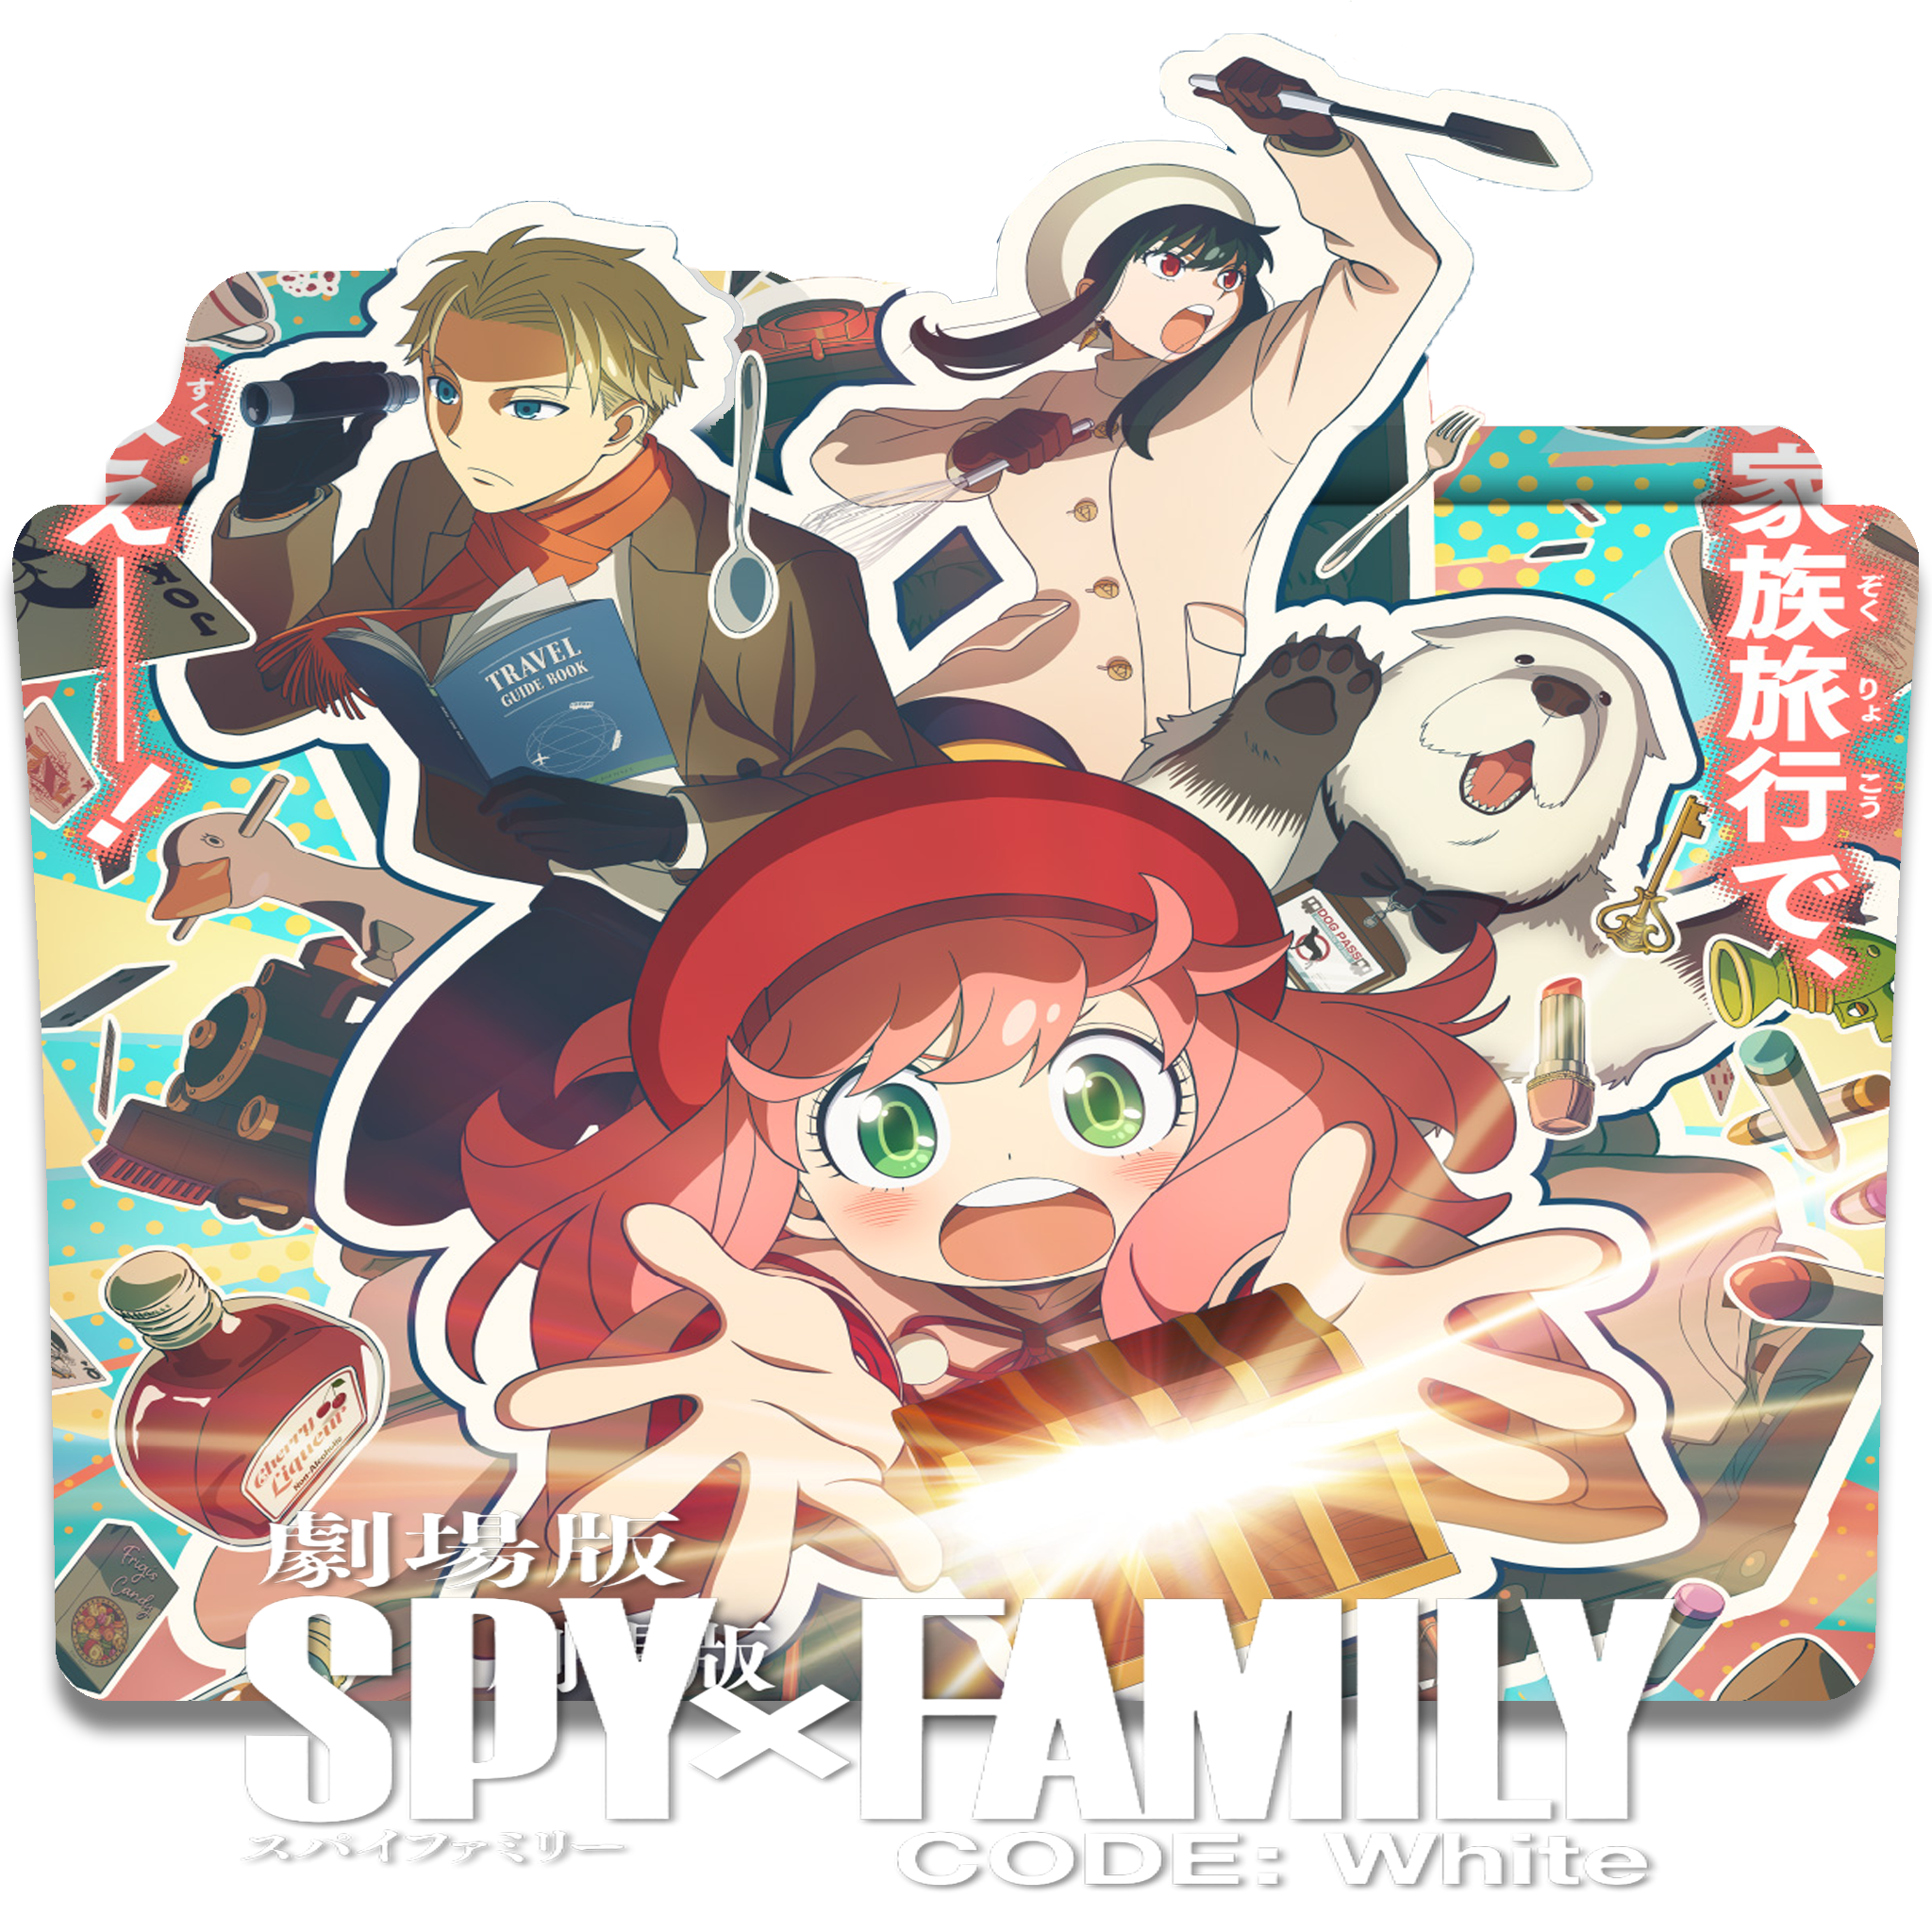 Spy X Family-17 by HawkDigital on DeviantArt